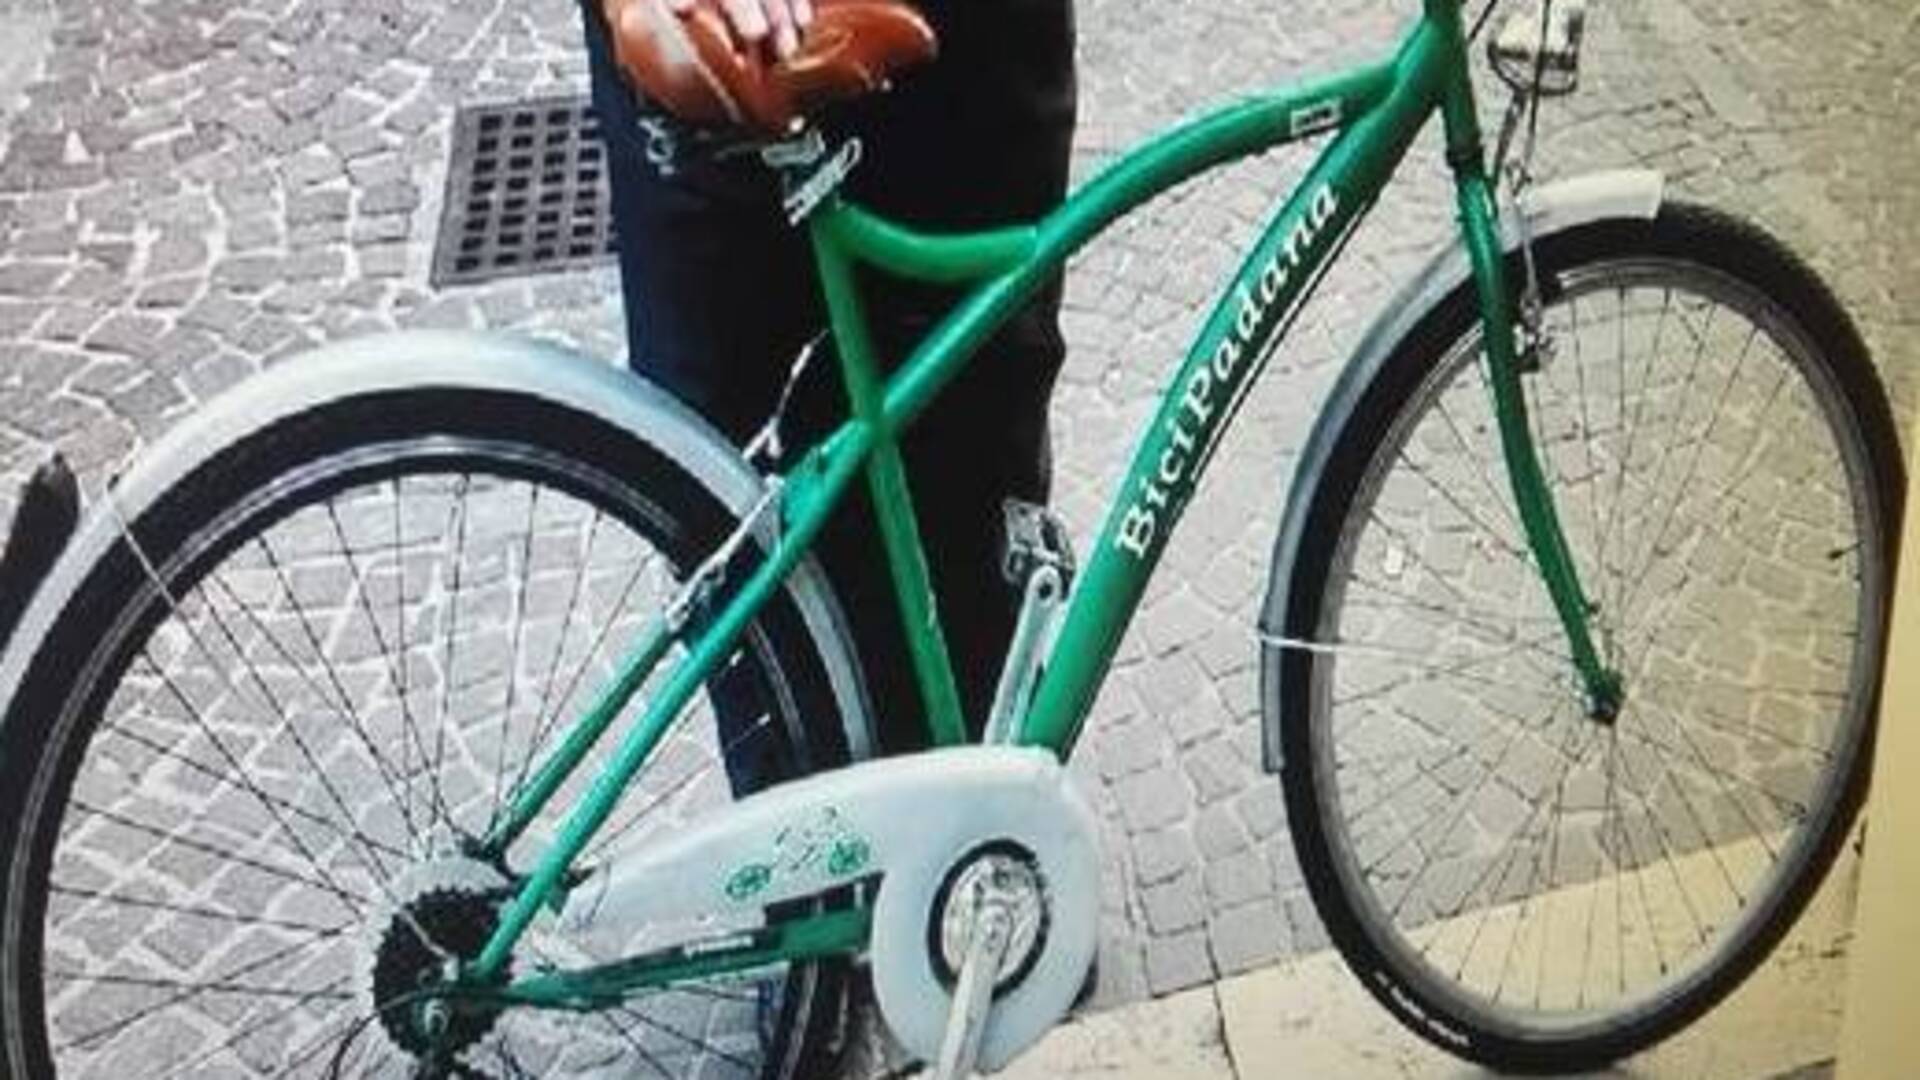 Ladri di bici: rubata la bici padana dell’ex consigliere Codega